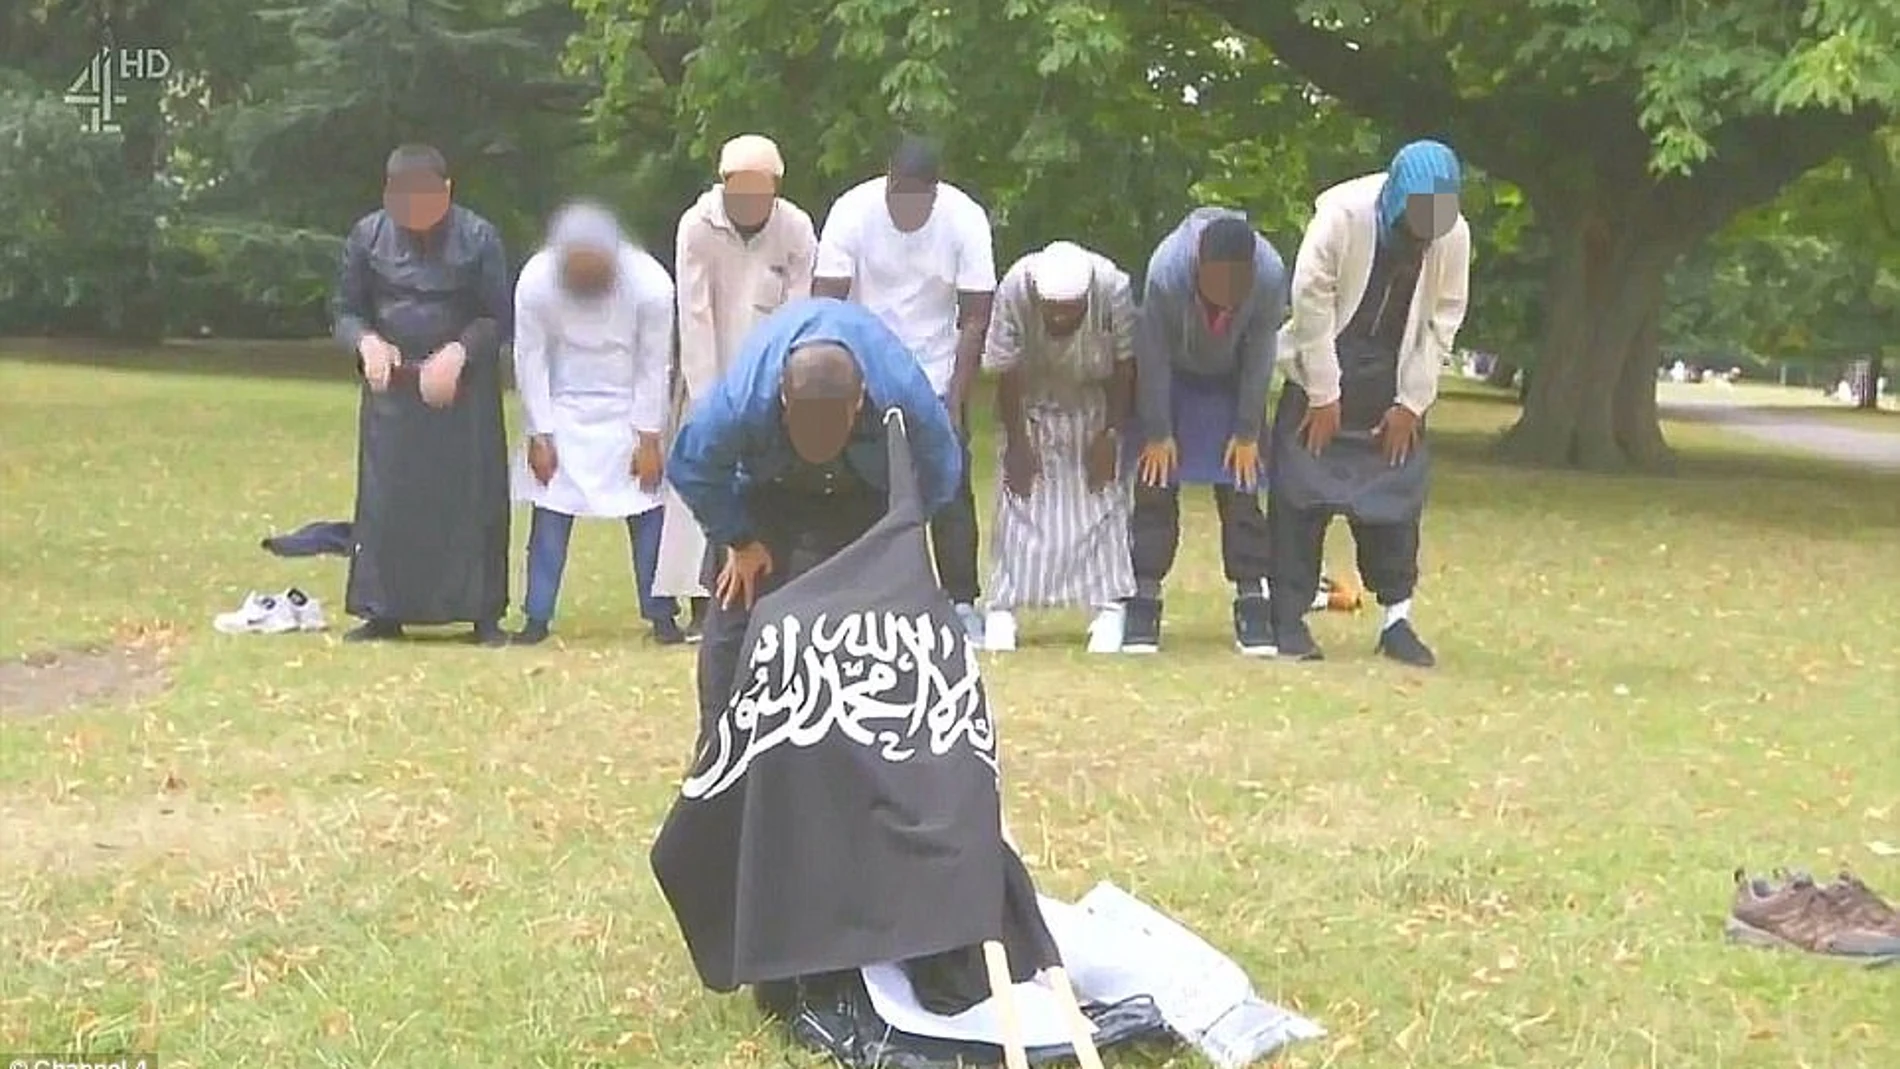 Pantallazo del vídeo de Channel 4 en el el terrorista despliega una bandera del ISIS